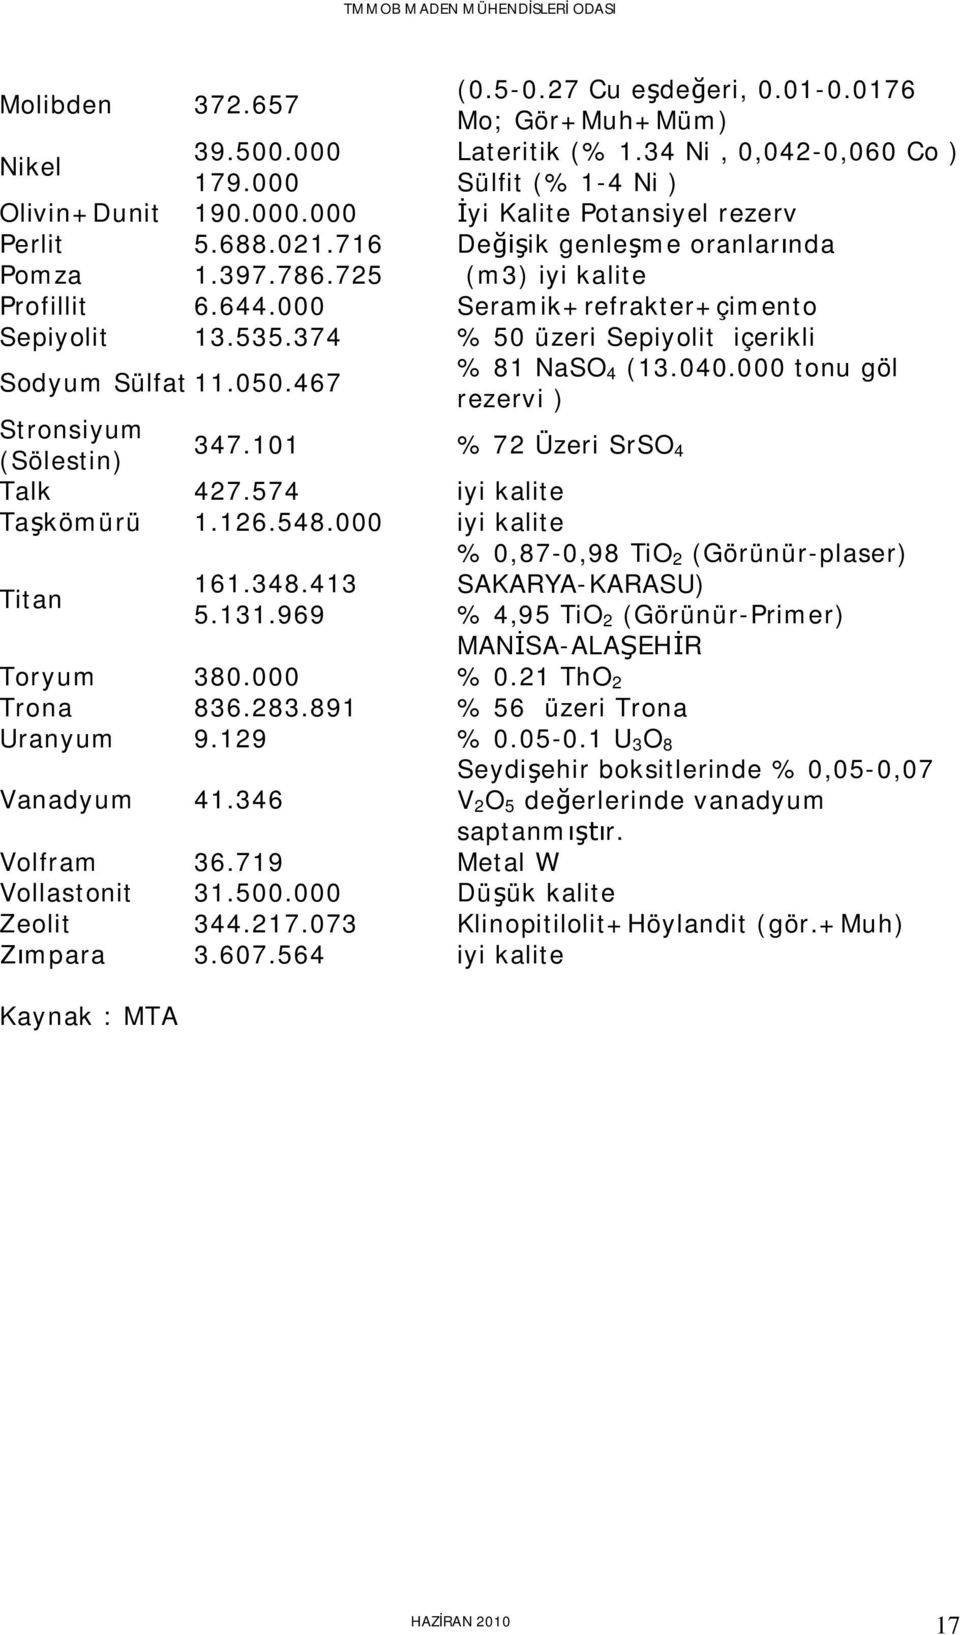 467 % 81 NaSO 4 (13.040.000 tonu göl rezervi ) Stronsiyum (Sölestin) 347.101 % 72 Üzeri SrSO 4 Talk 427.574 iyi kalite Ta kömürü 1.126.548.000 iyi kalite % 0,87-0,98 TiO 2 (Görünür-plaser) Titan 161.